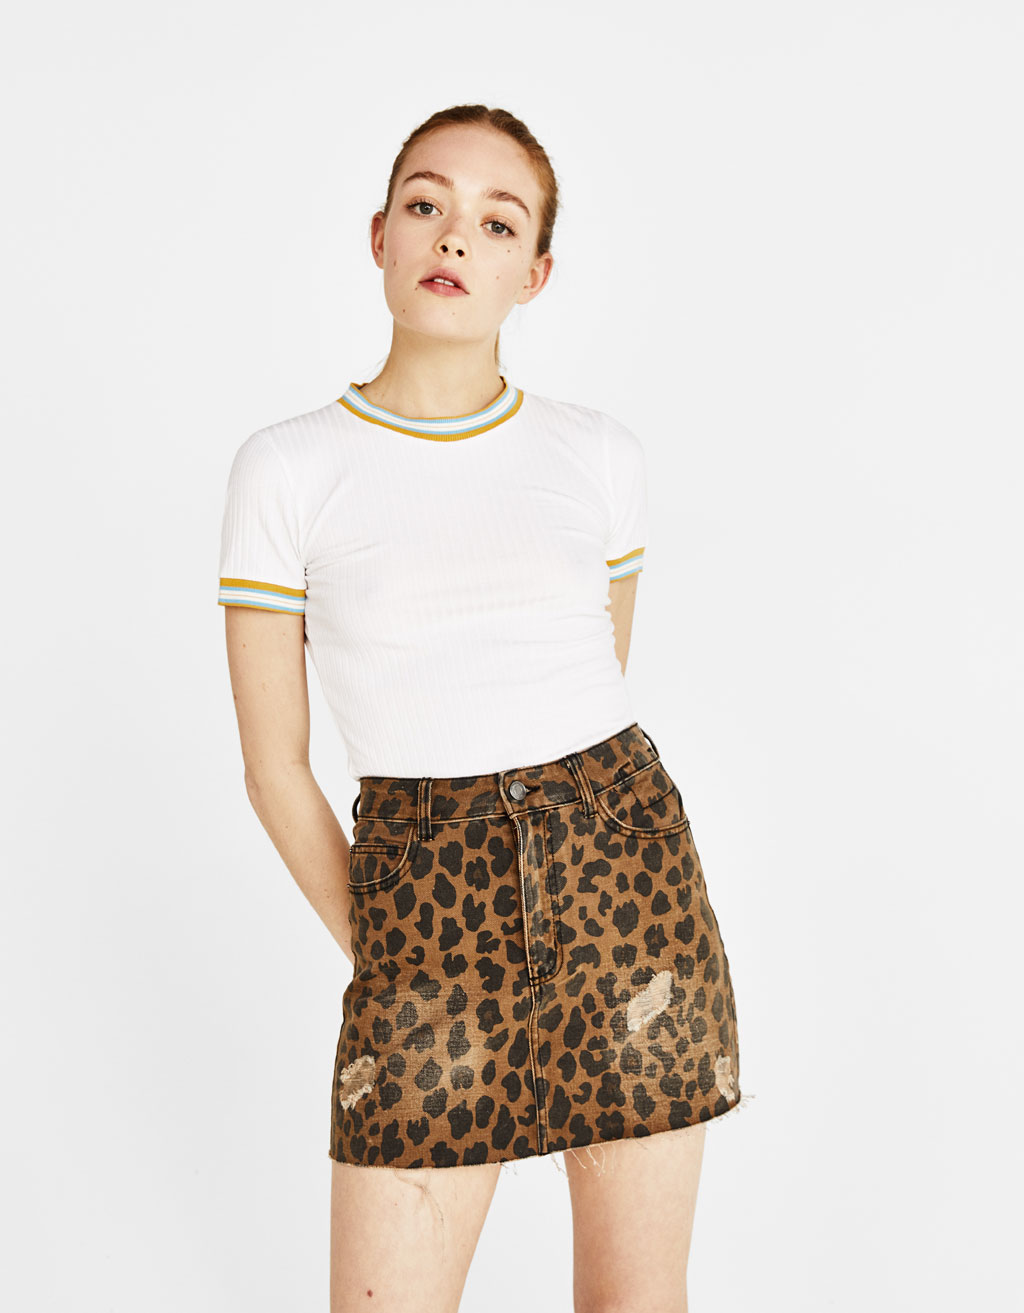 Леопардовая джинсовая юбка. Бершка леопард. Леопардовая юбка бершка. Юбка бершка леопард. Блузка леопард бершка.